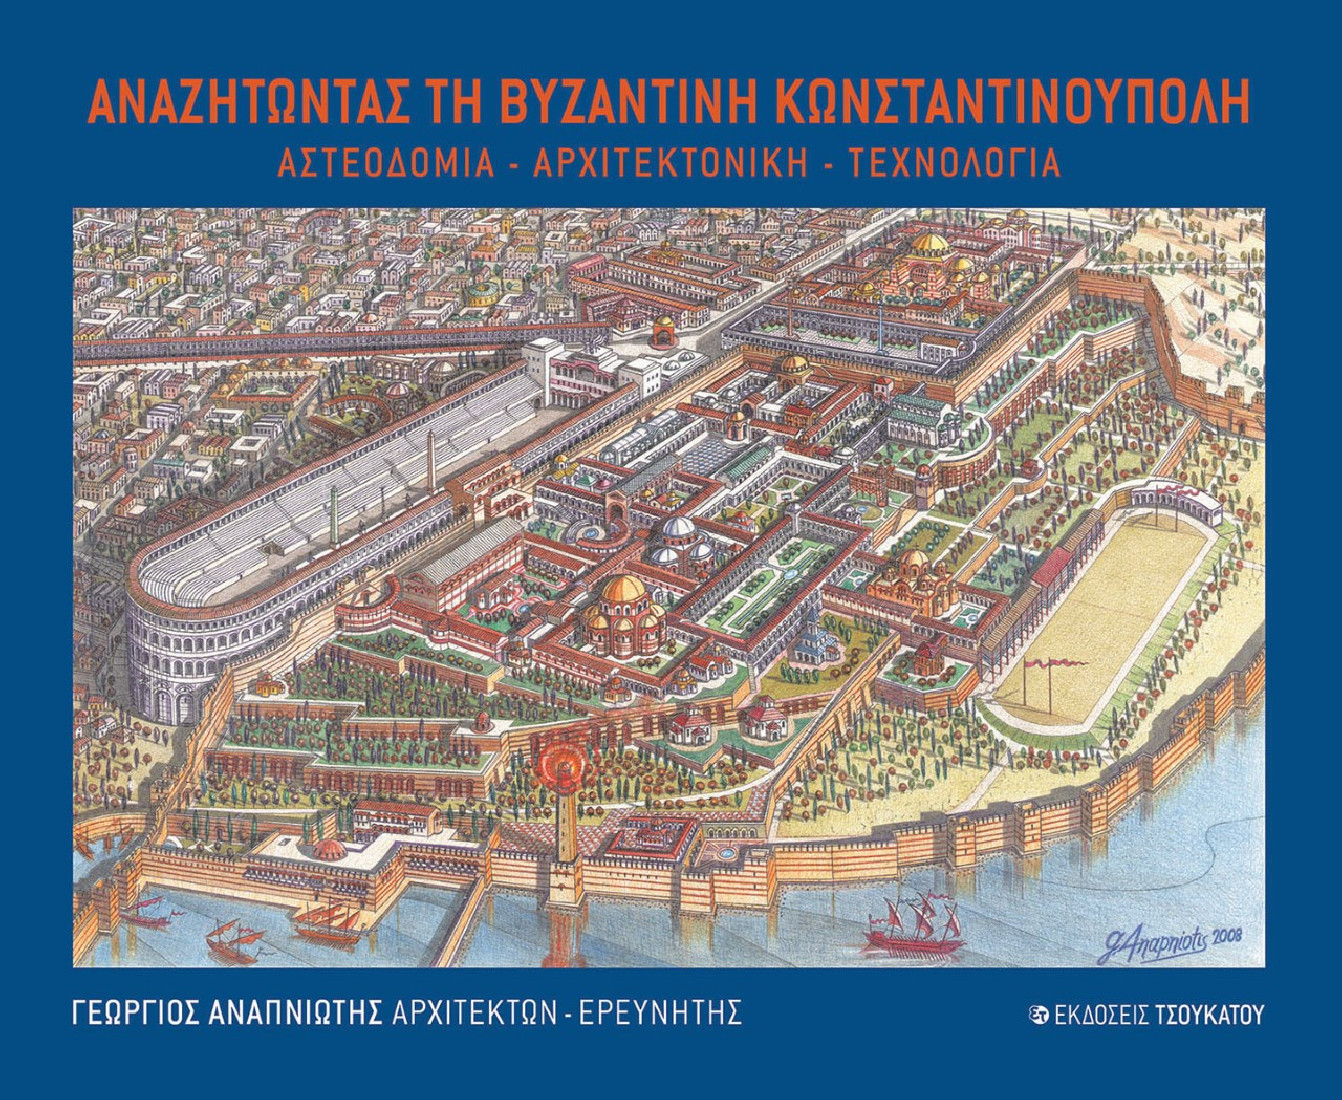 Αναζητώντας τη Βυζαντινή Κωνσταντινούπολη